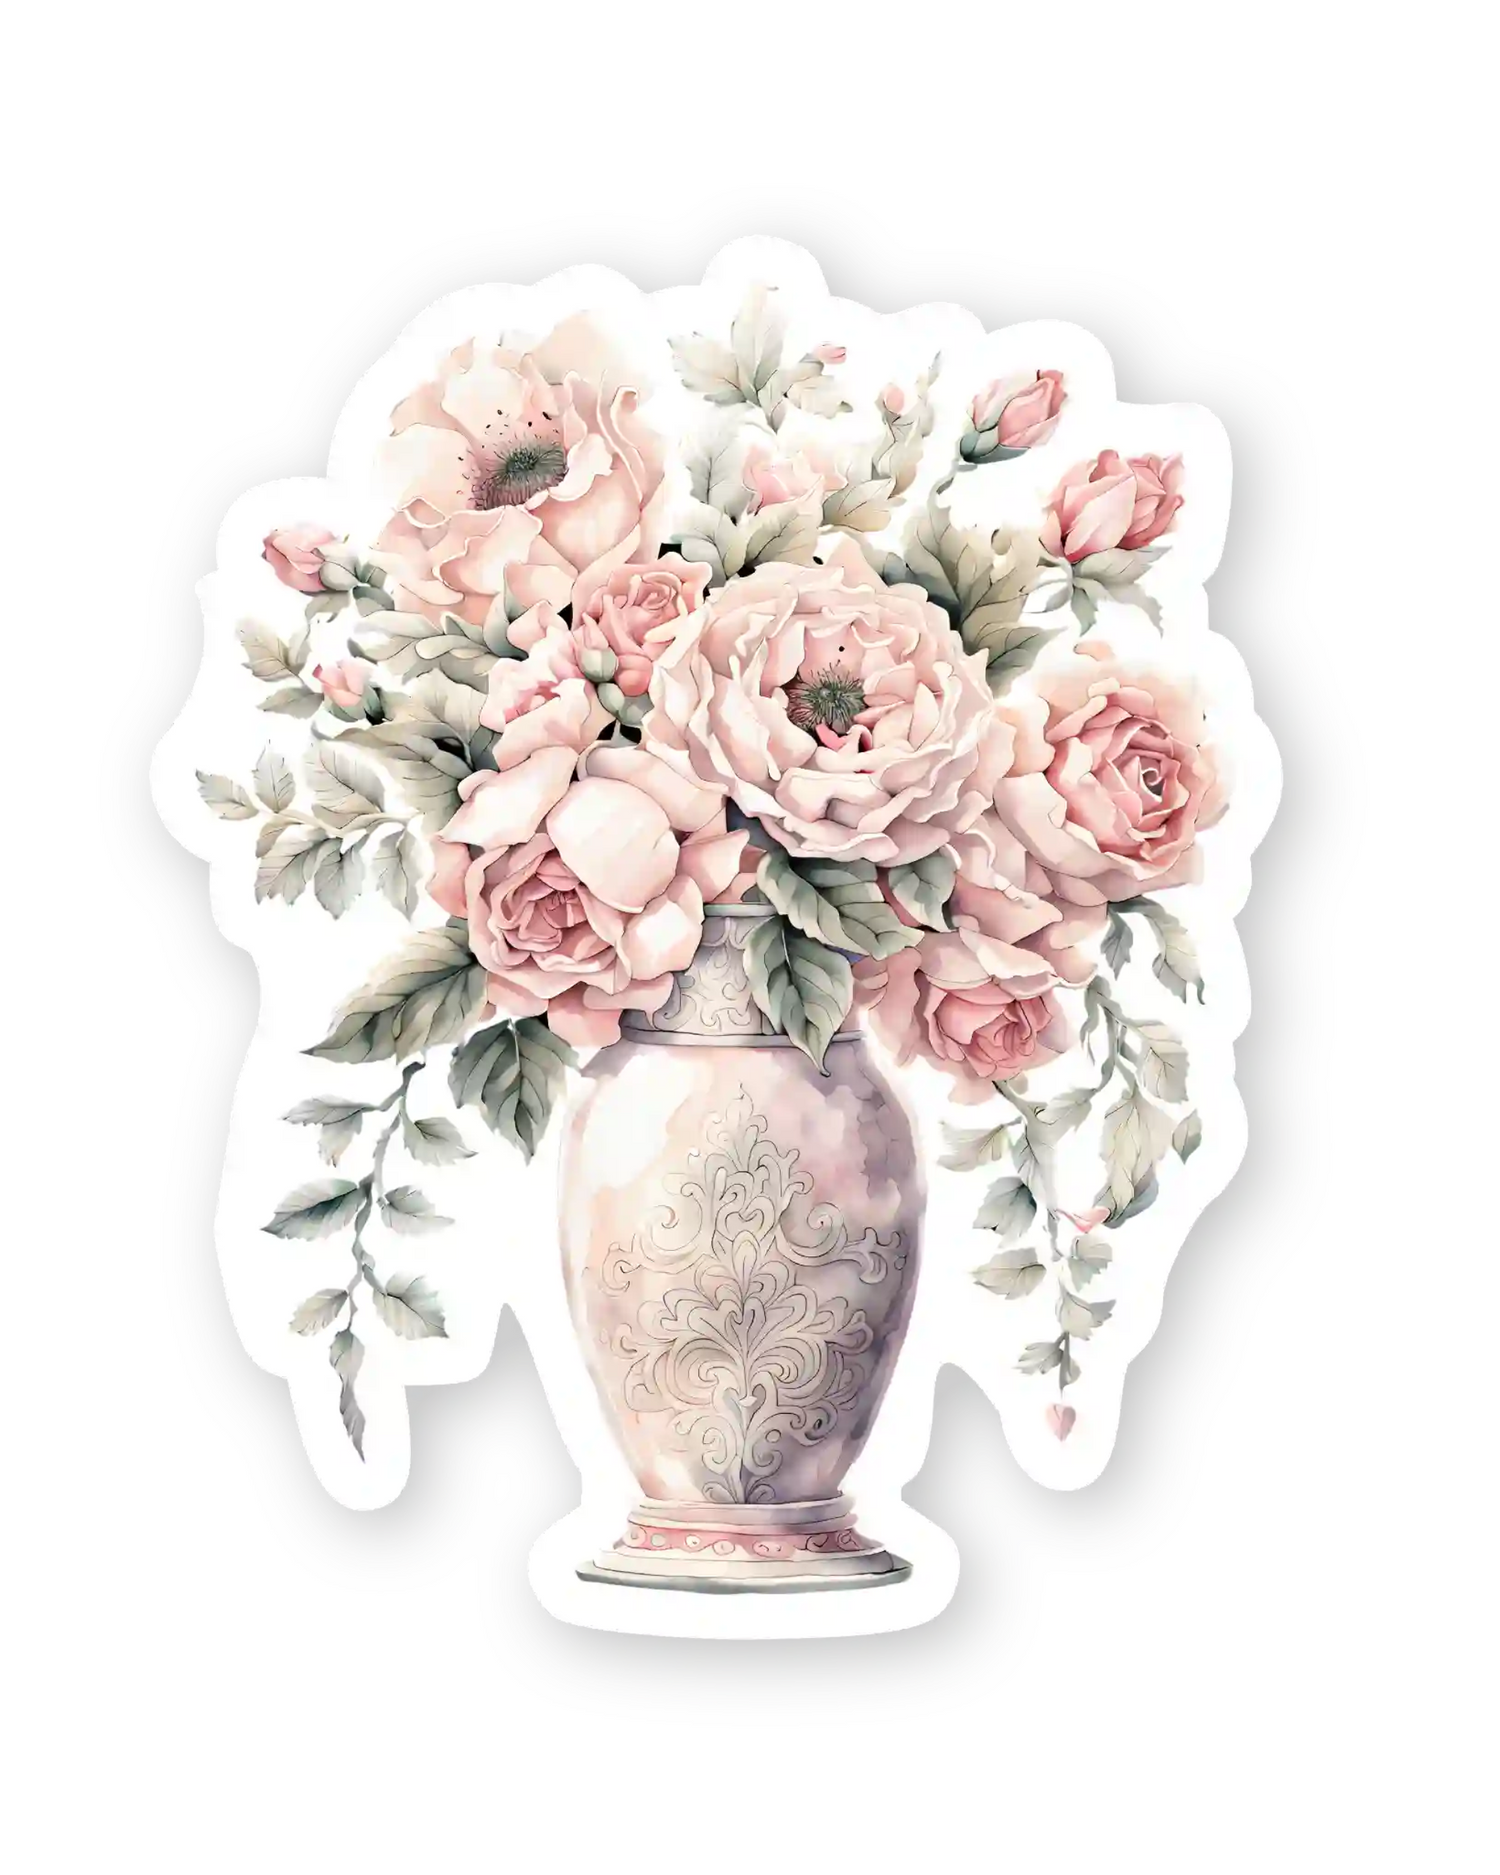 Set naljepnica za planer Everlasting, ilustracija vaza s cvijećem